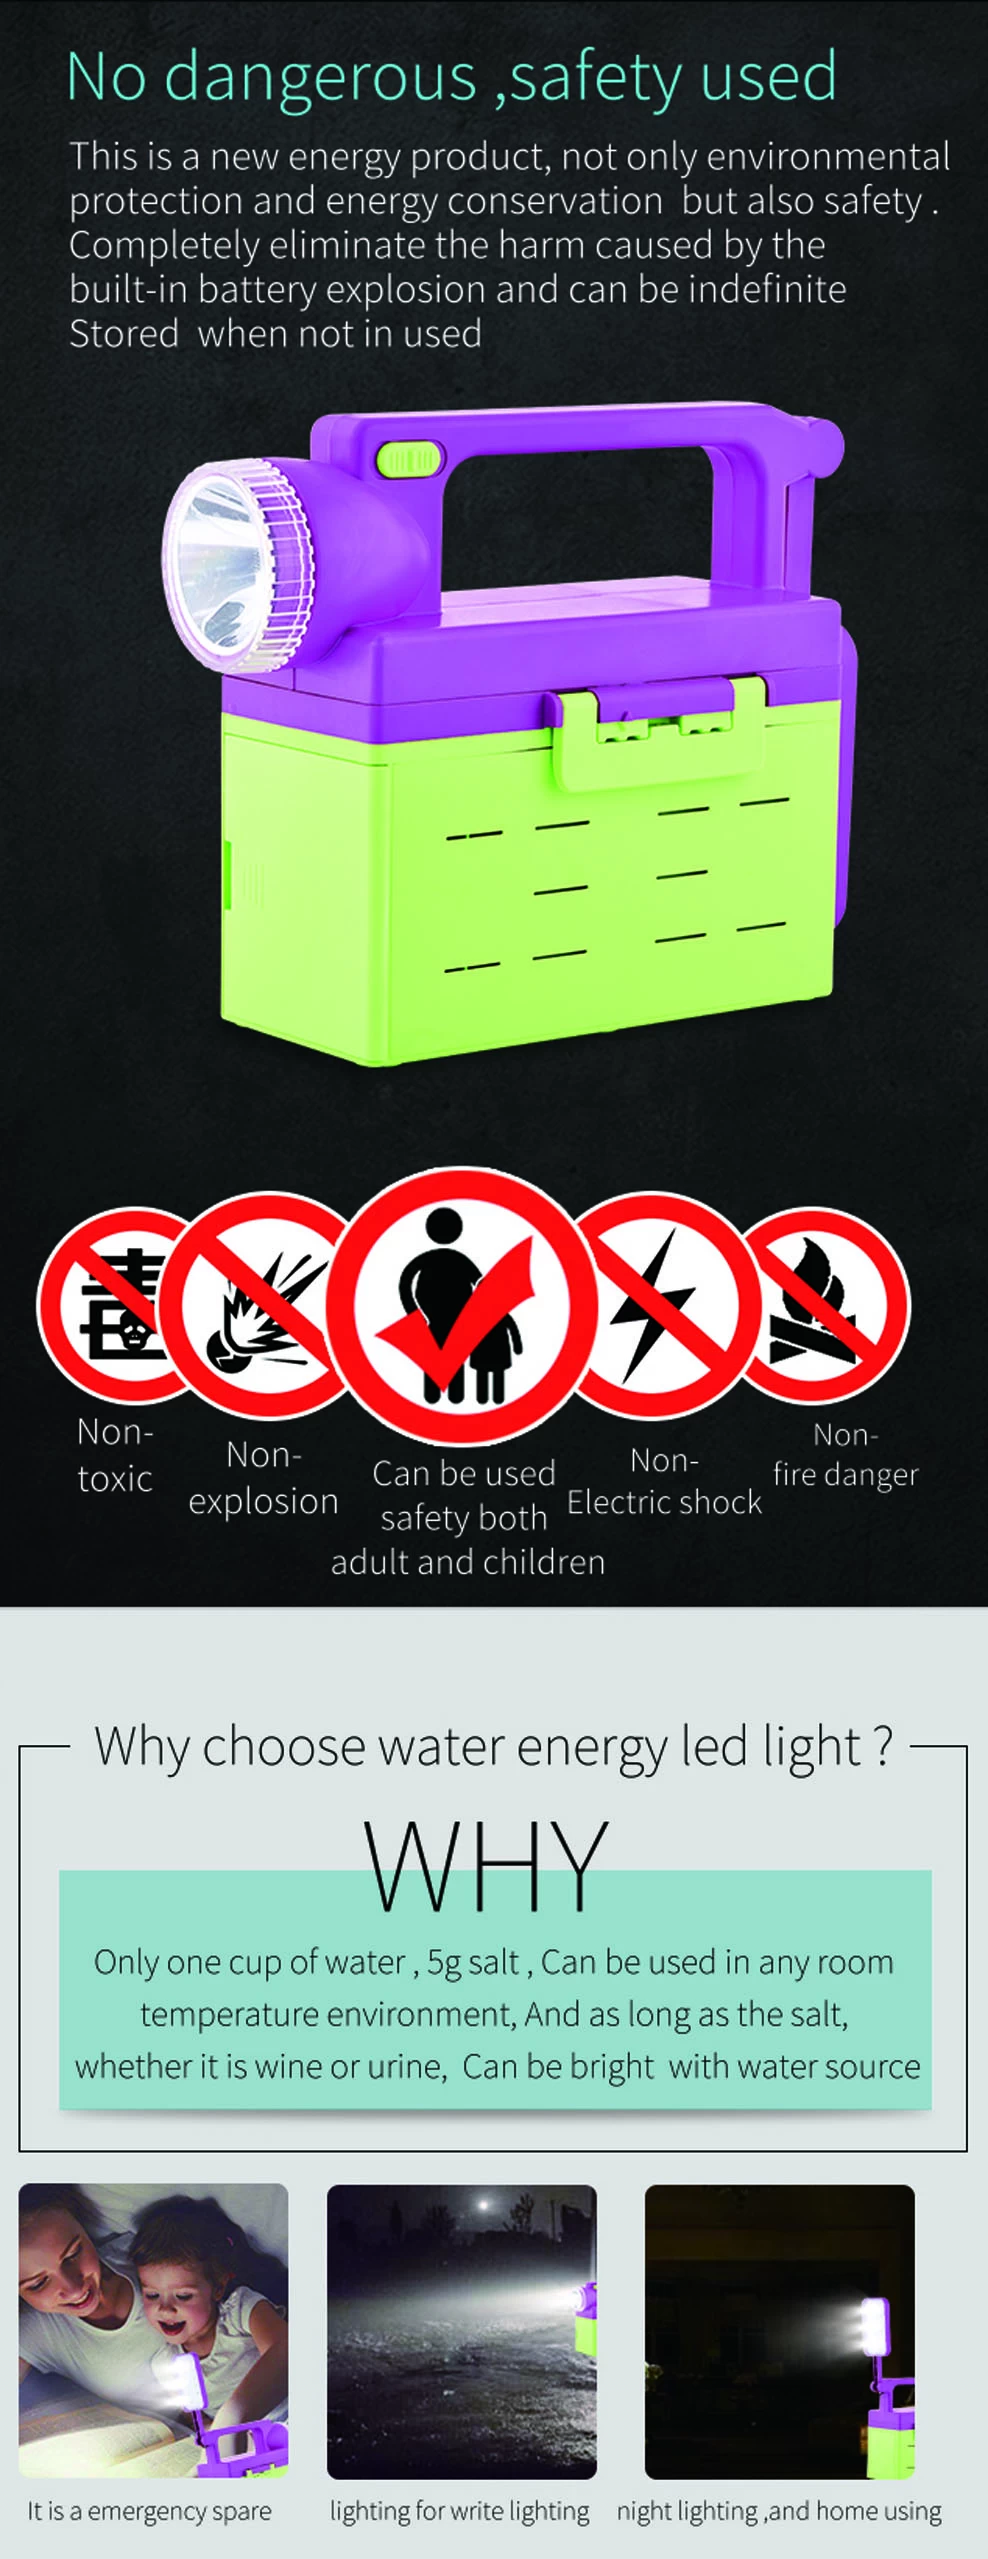 water energy light 4